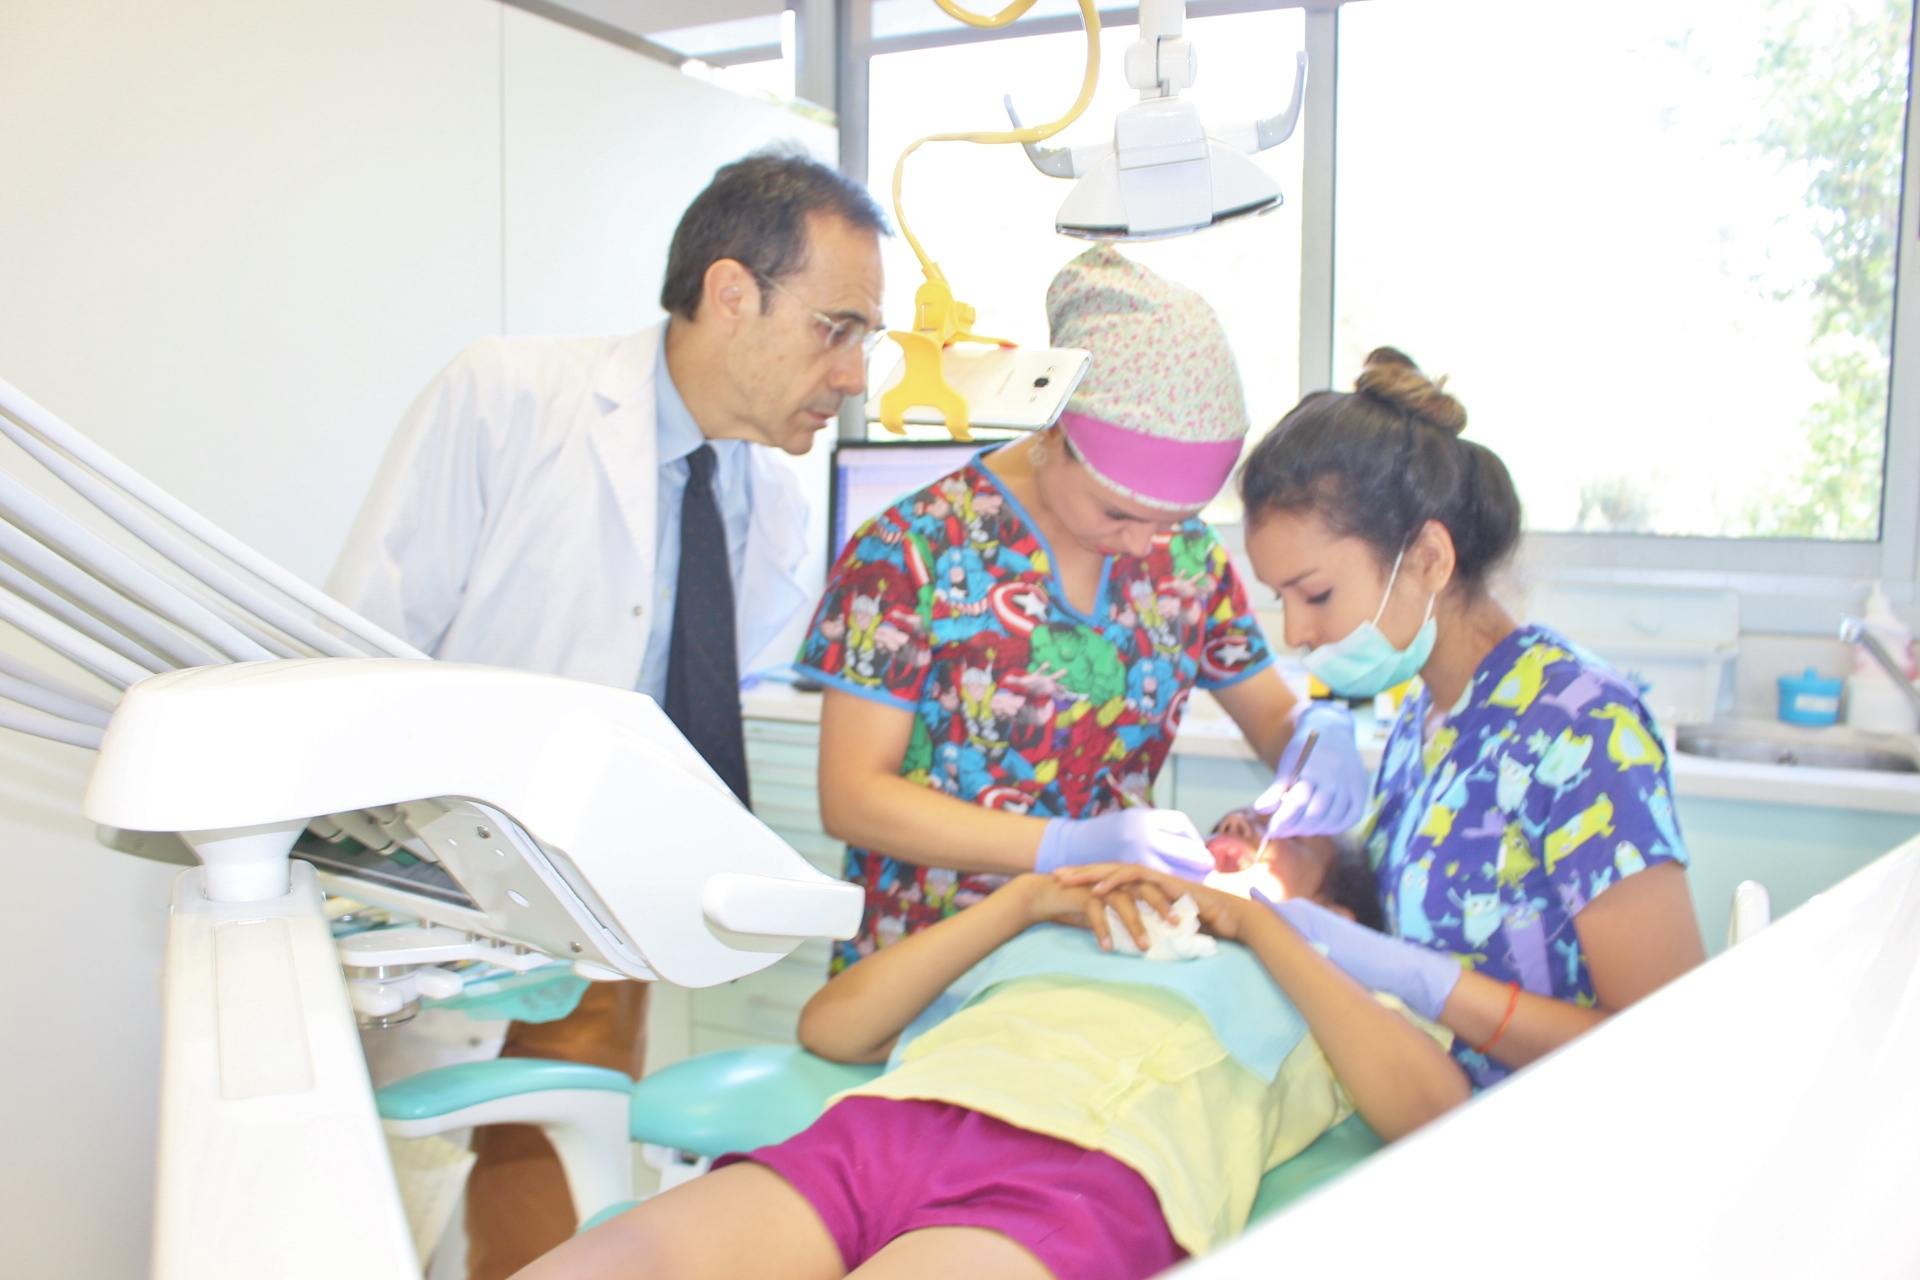 Inscriu-te al curs de “Noves tendències en Odontopediatria” de la Universitat de Barcelona